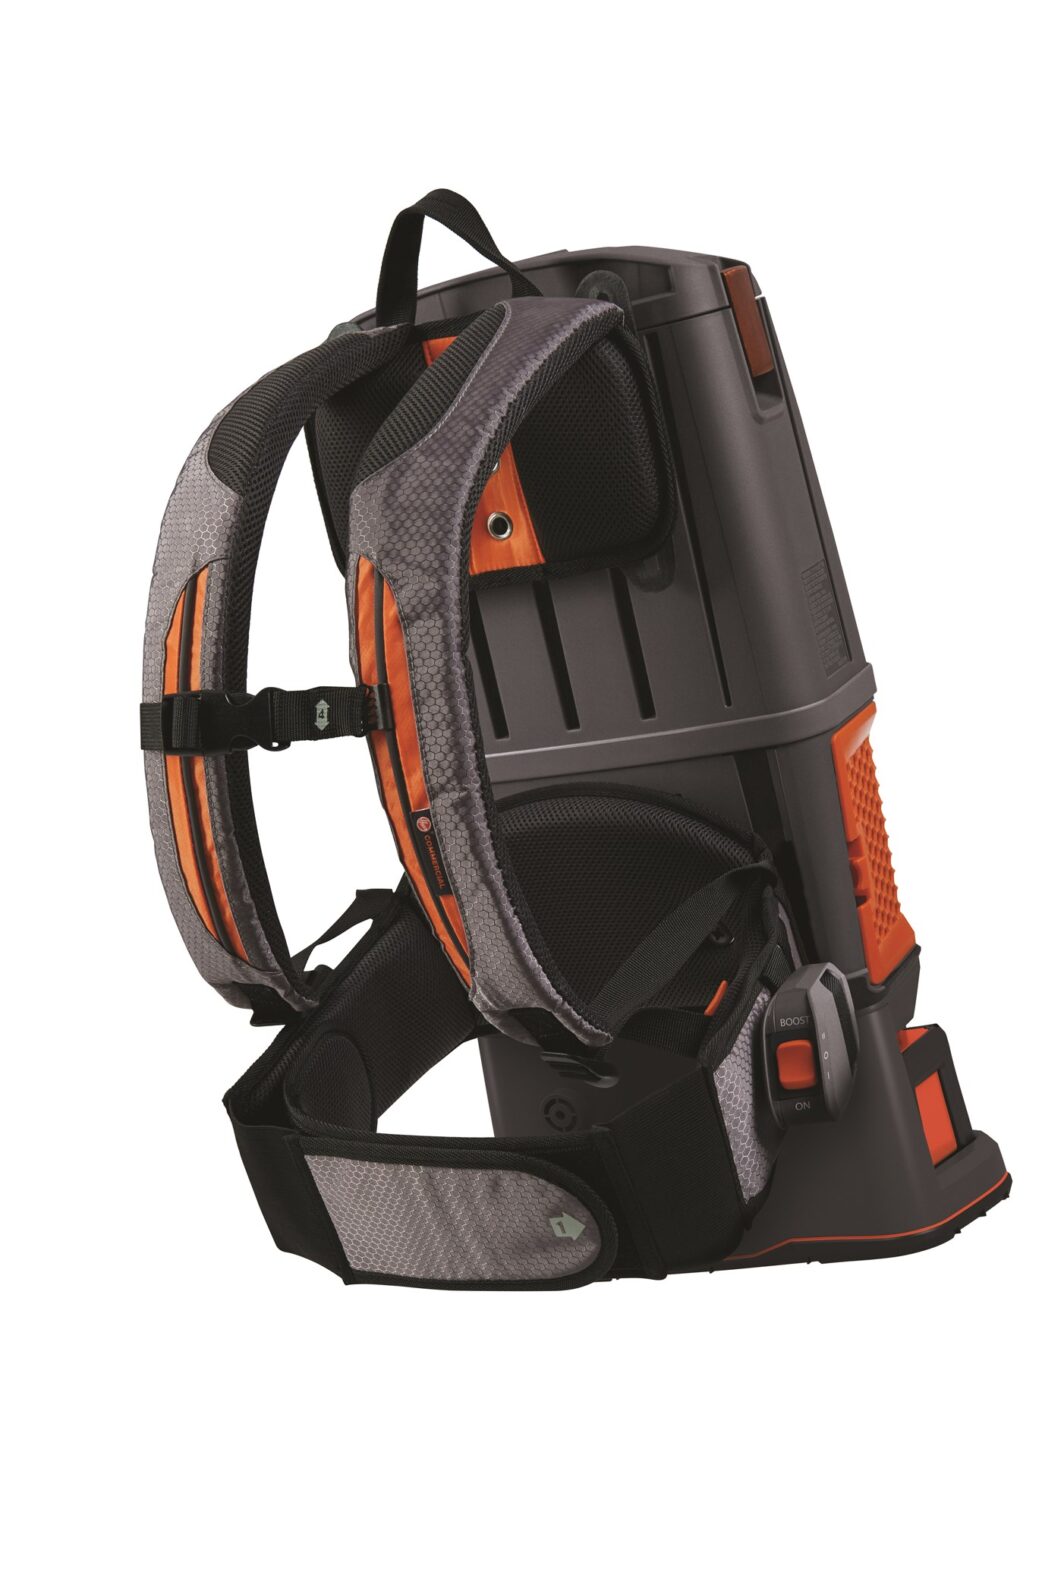 Hoover Hushtone 6Q Cordless Backpack Harness